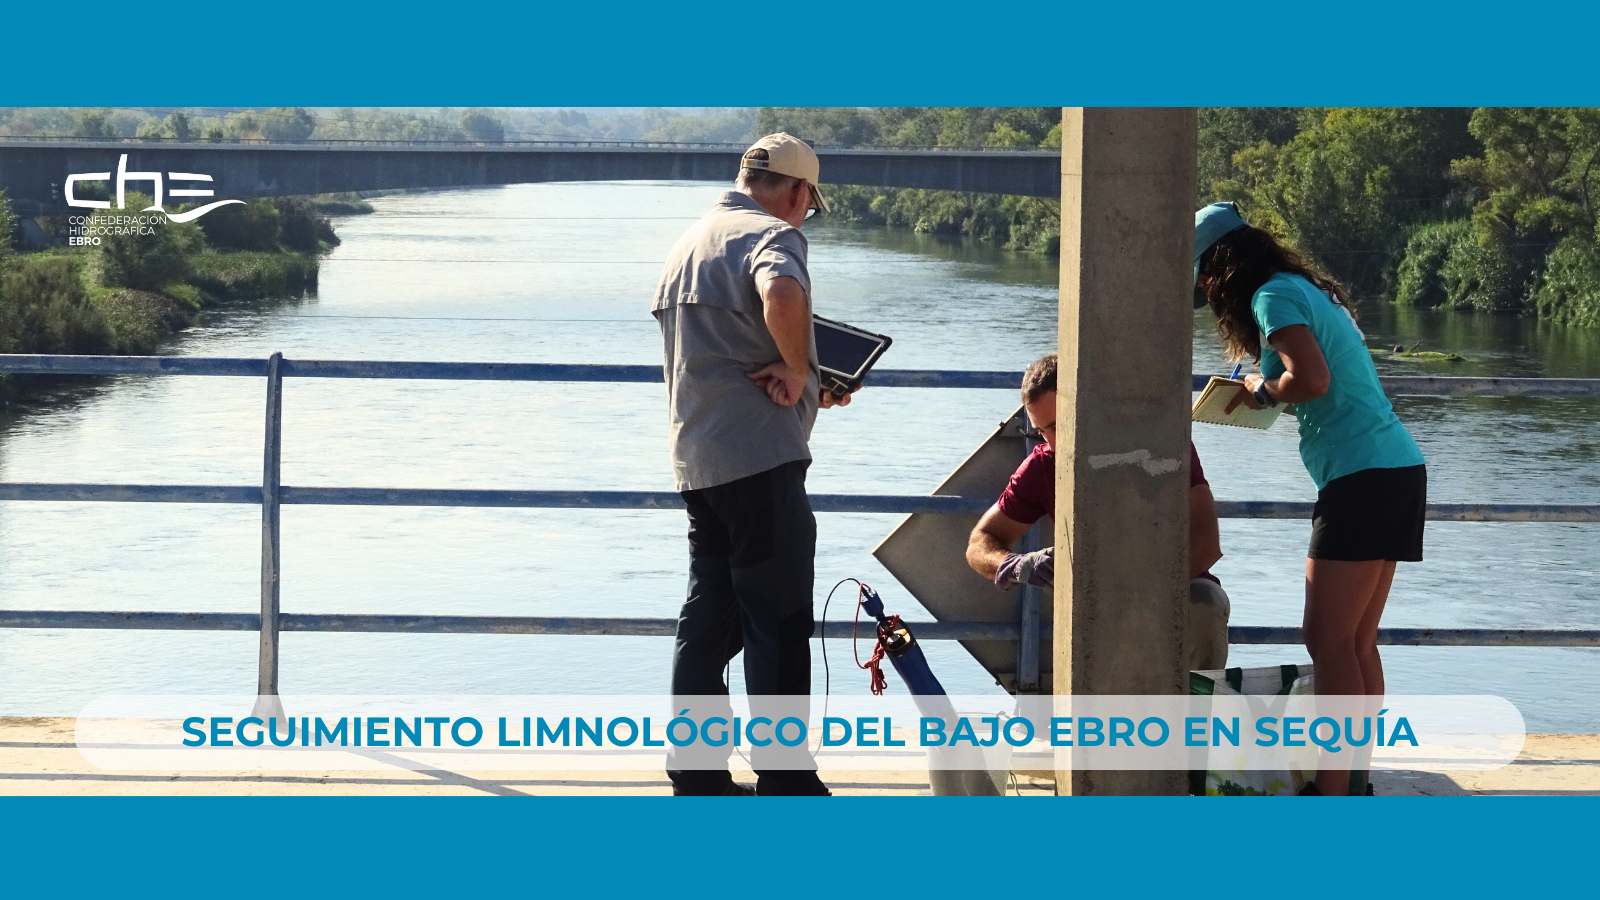 Imagen noticia - Segunda campaña del seguimiento limnológico del Bajo Ebro en sequía